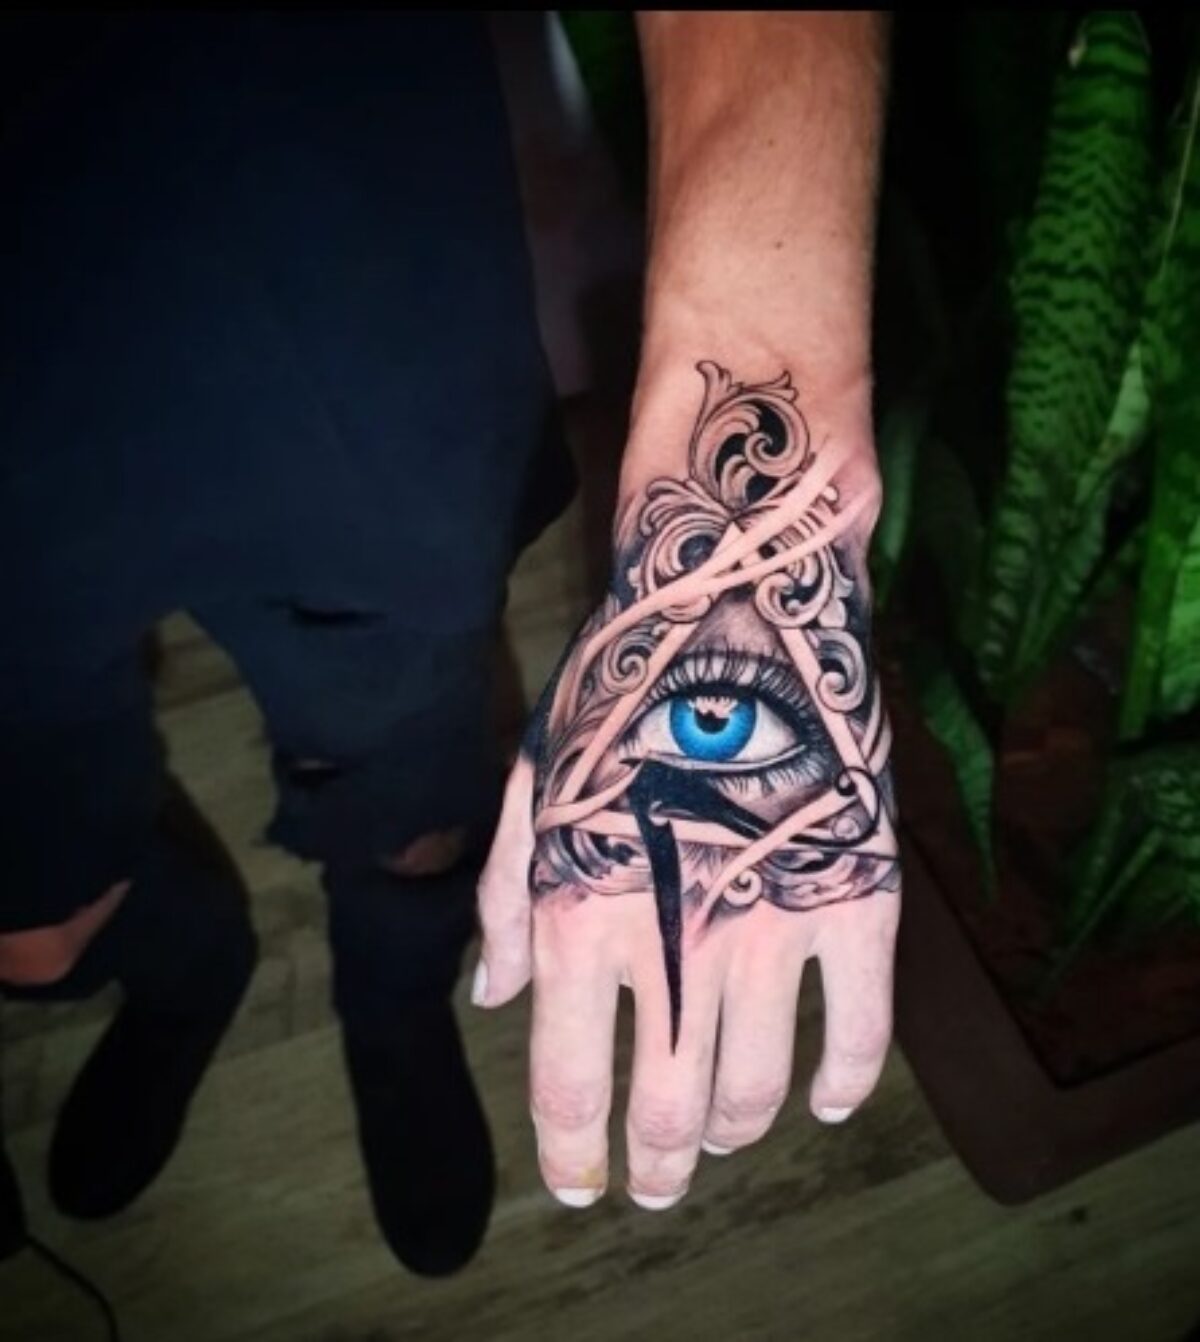 Tatuagem na Mão Masculina: 10 Inspirações! – Quarto Sete